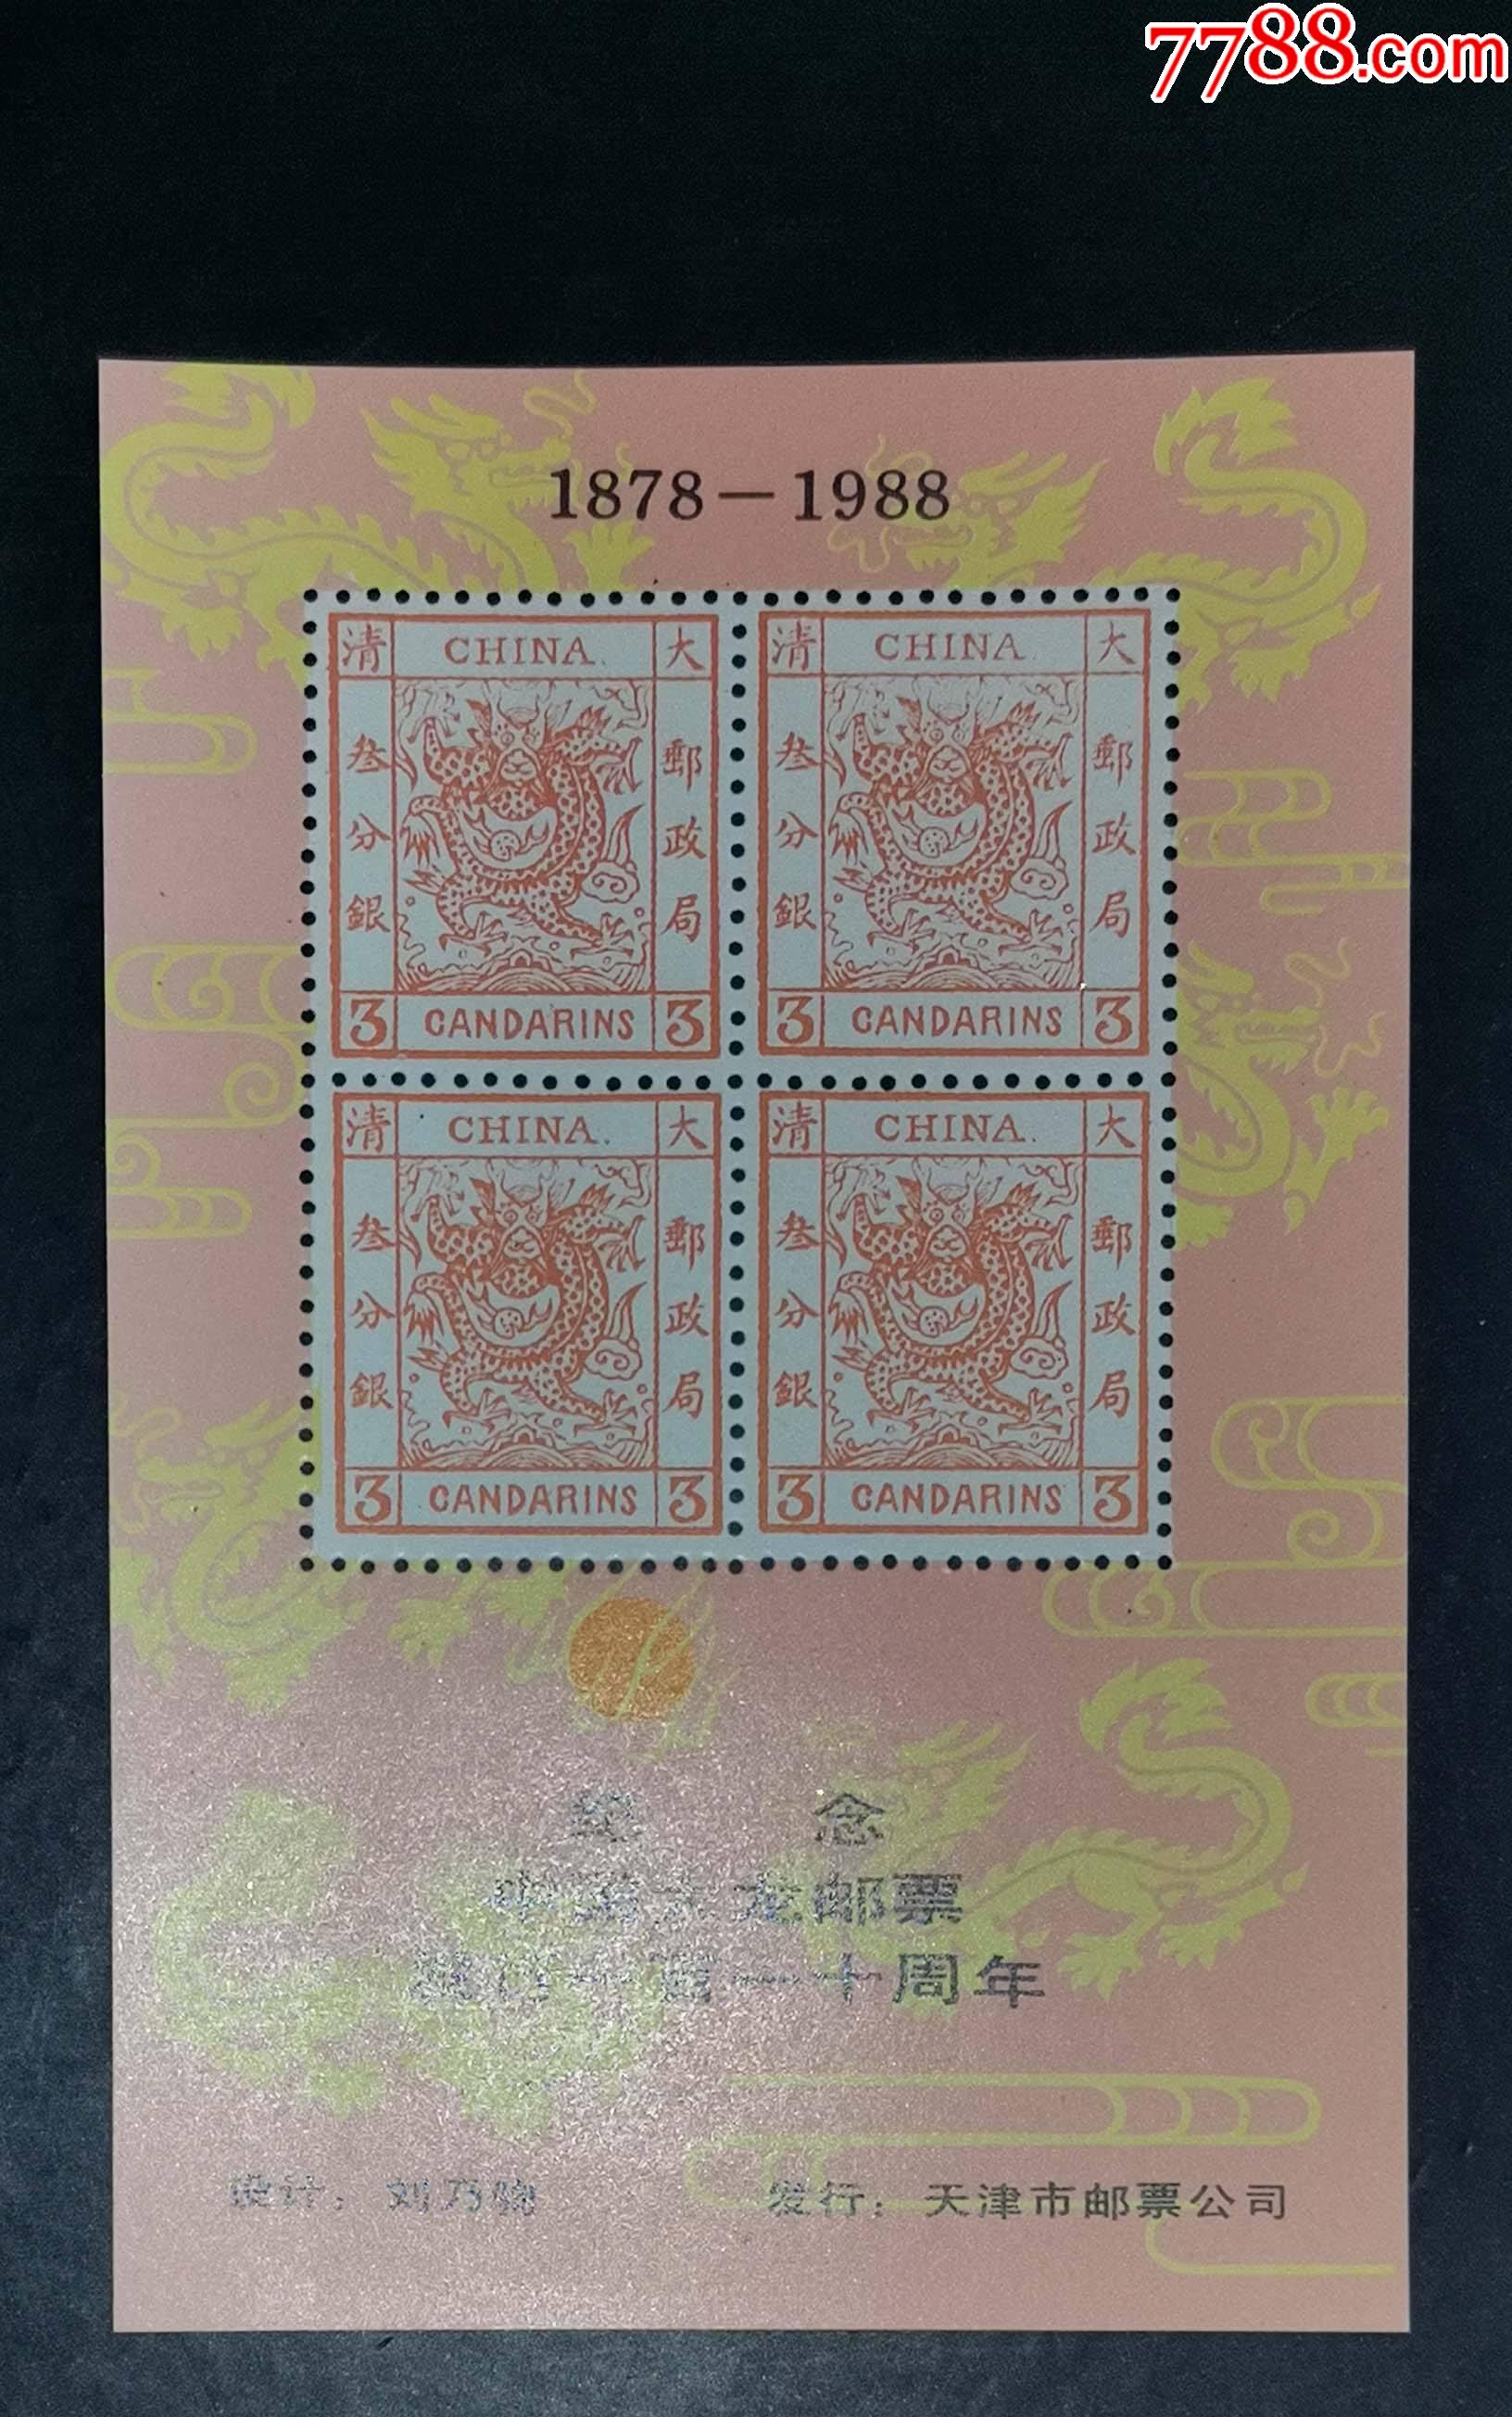 纪念中国大龙邮票价格(纪念大龙邮票在天津发行110周年)